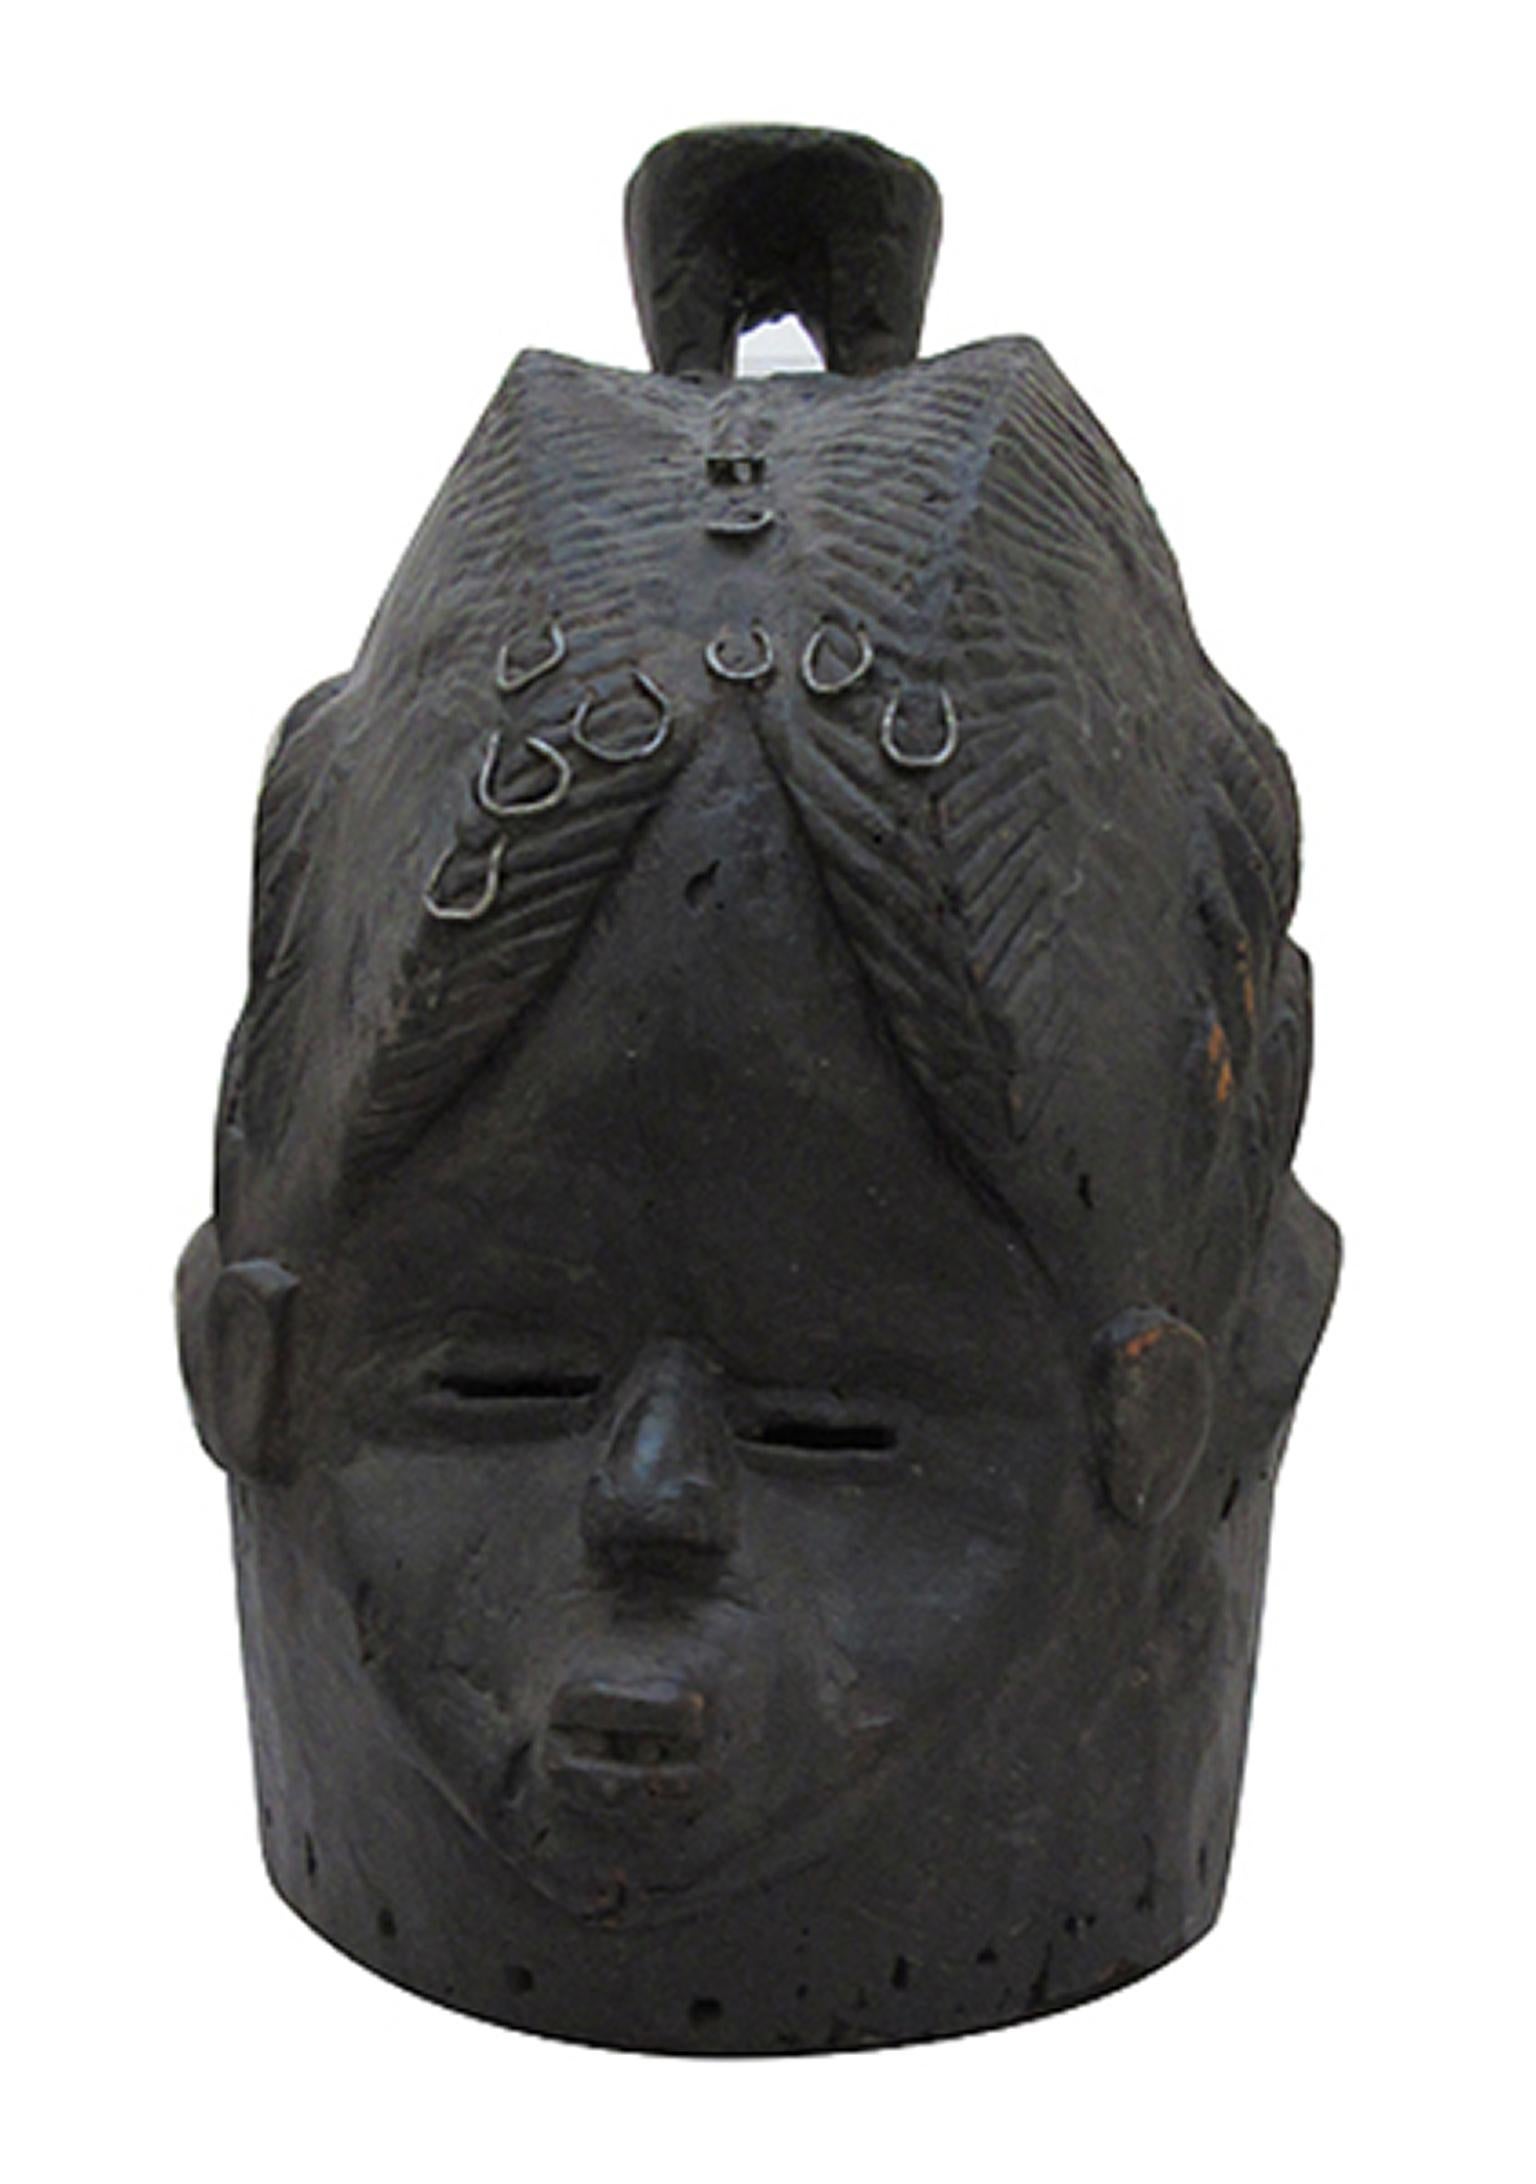 Holz von der Secret Society Mask-Sierra Leone W. Africa, um 1930